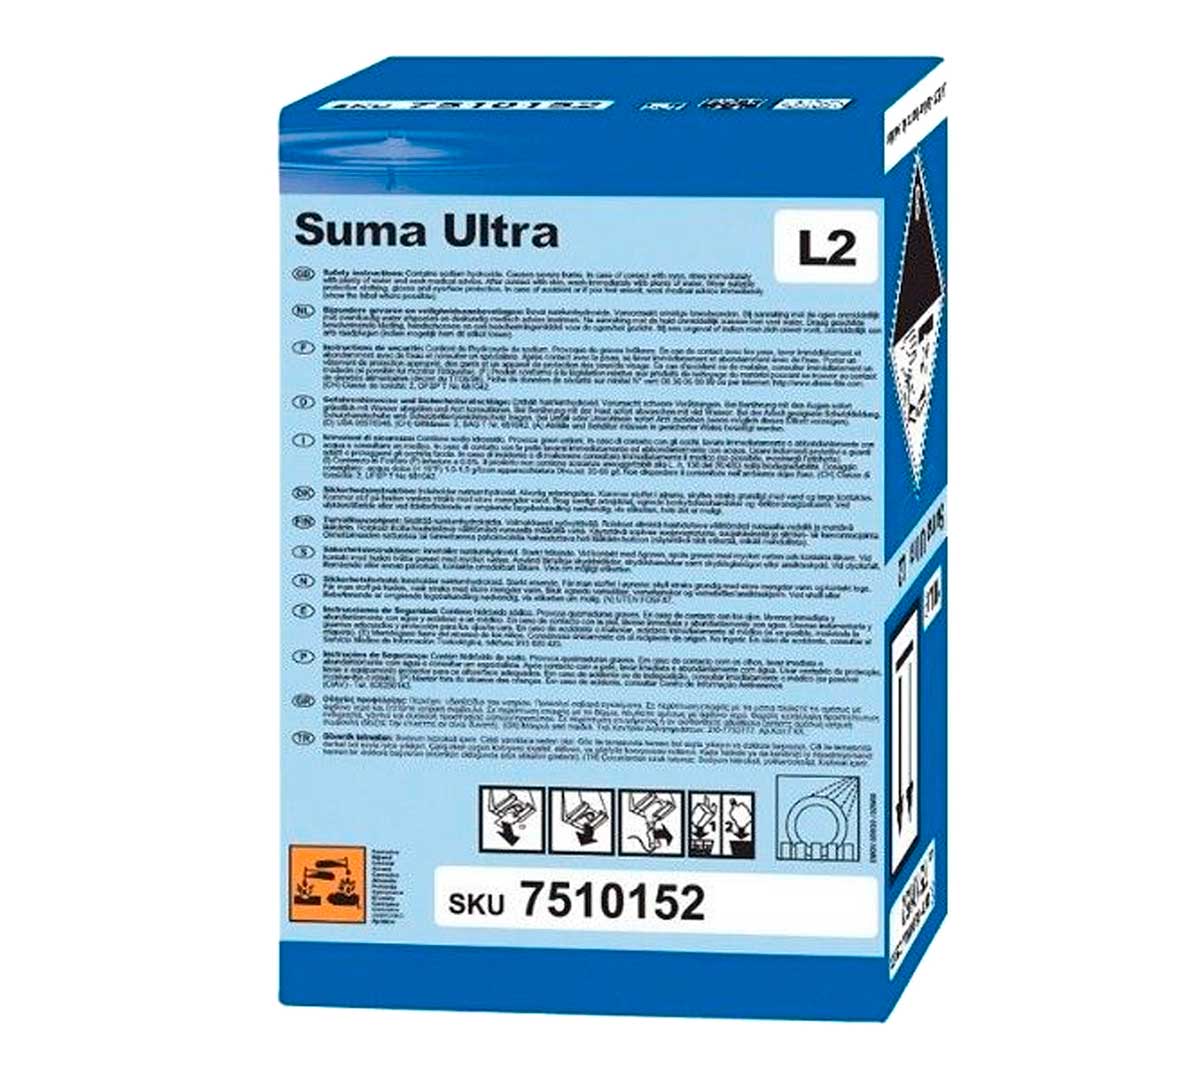 Detergente Líquido Diversey Suma Ultra L2 Safepack